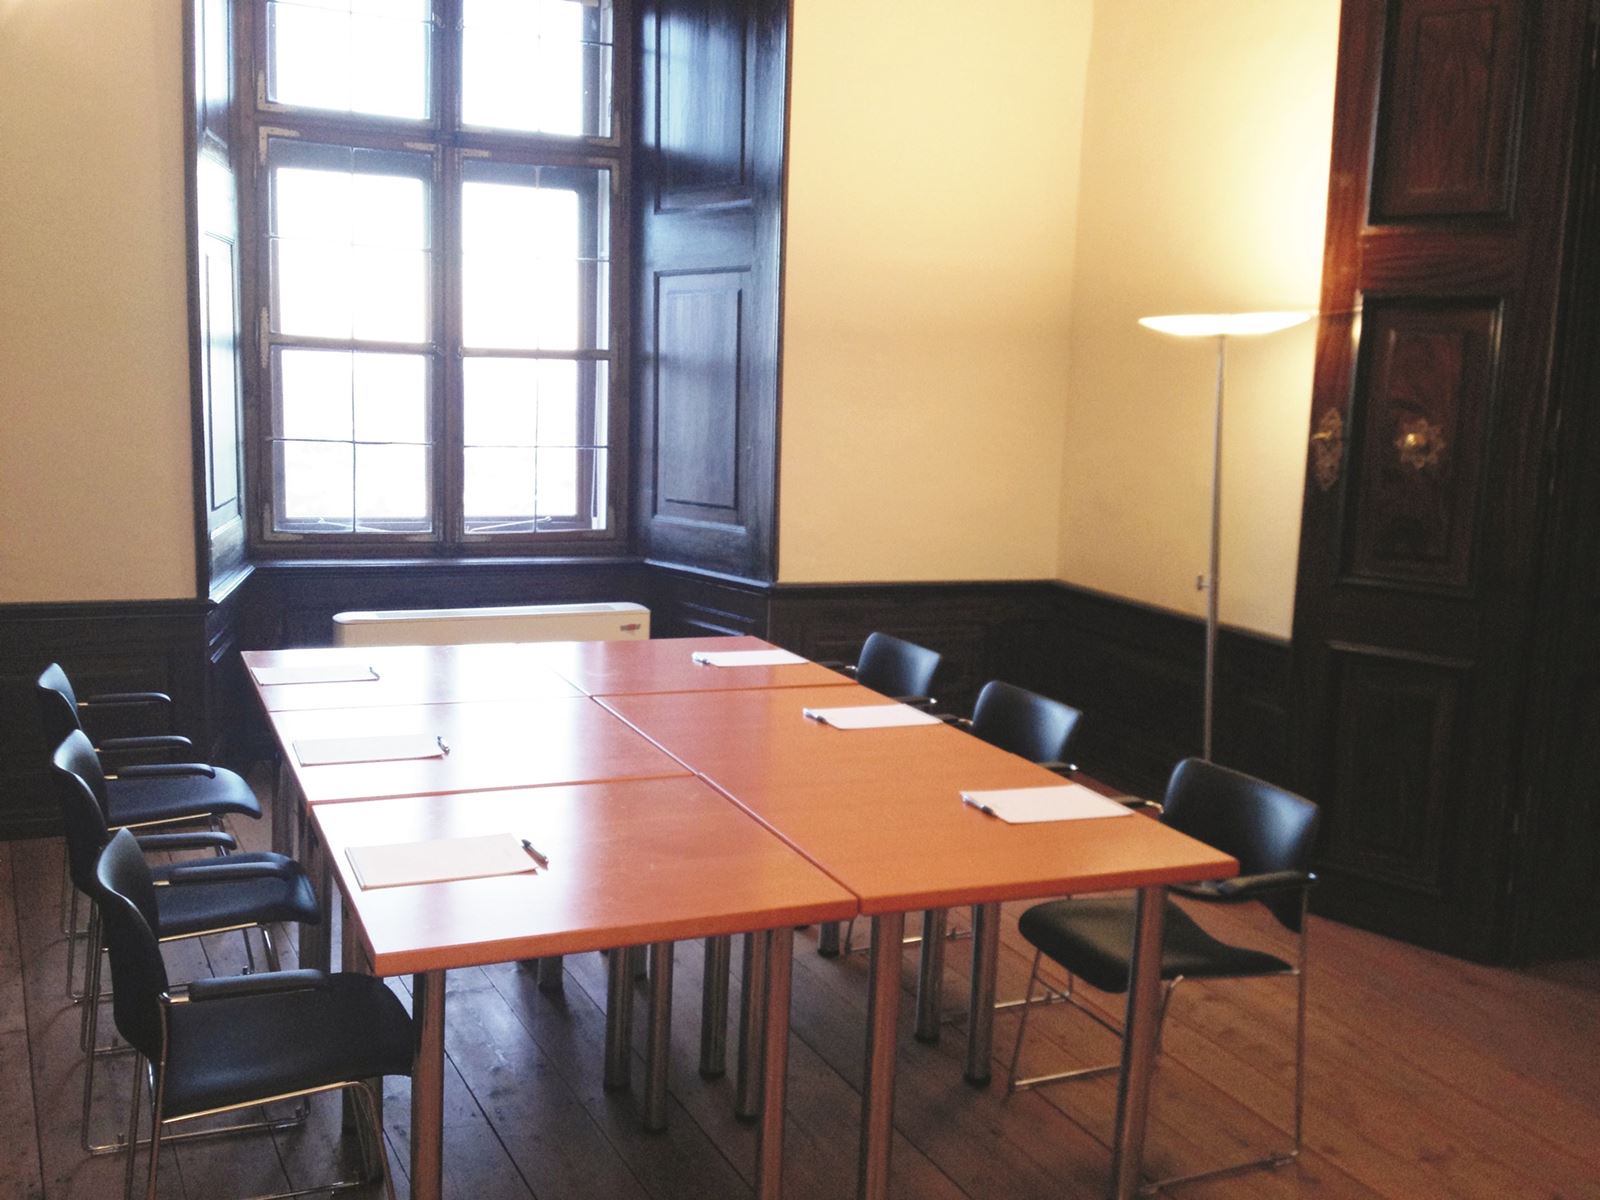 Seminarraum Schloss5a mit zusammengestellten Tischen und Sesseln. Im Eck beleuchtet eine Stehlampe den Raum